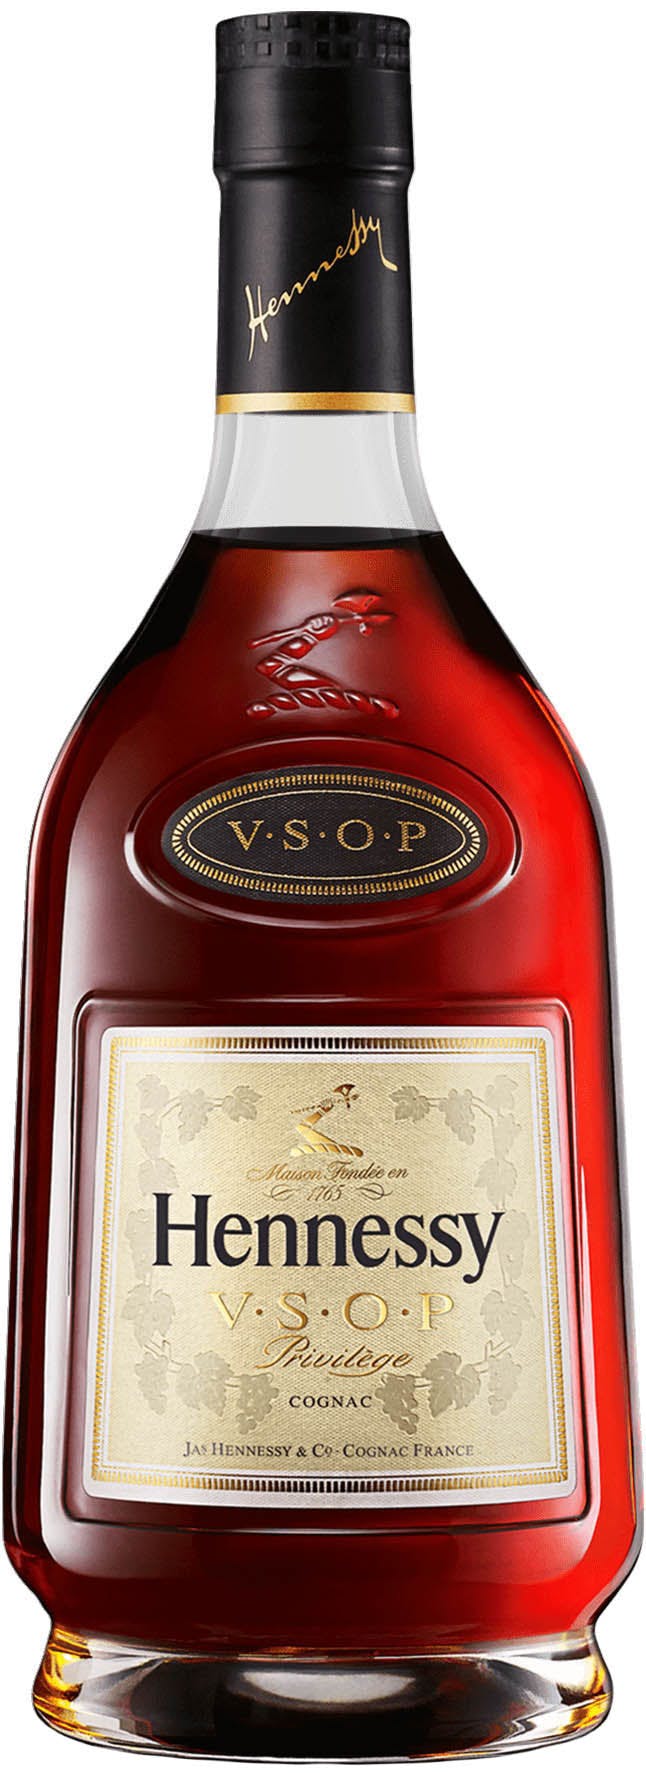 Hennessy Cognac VSOP plus 20 years